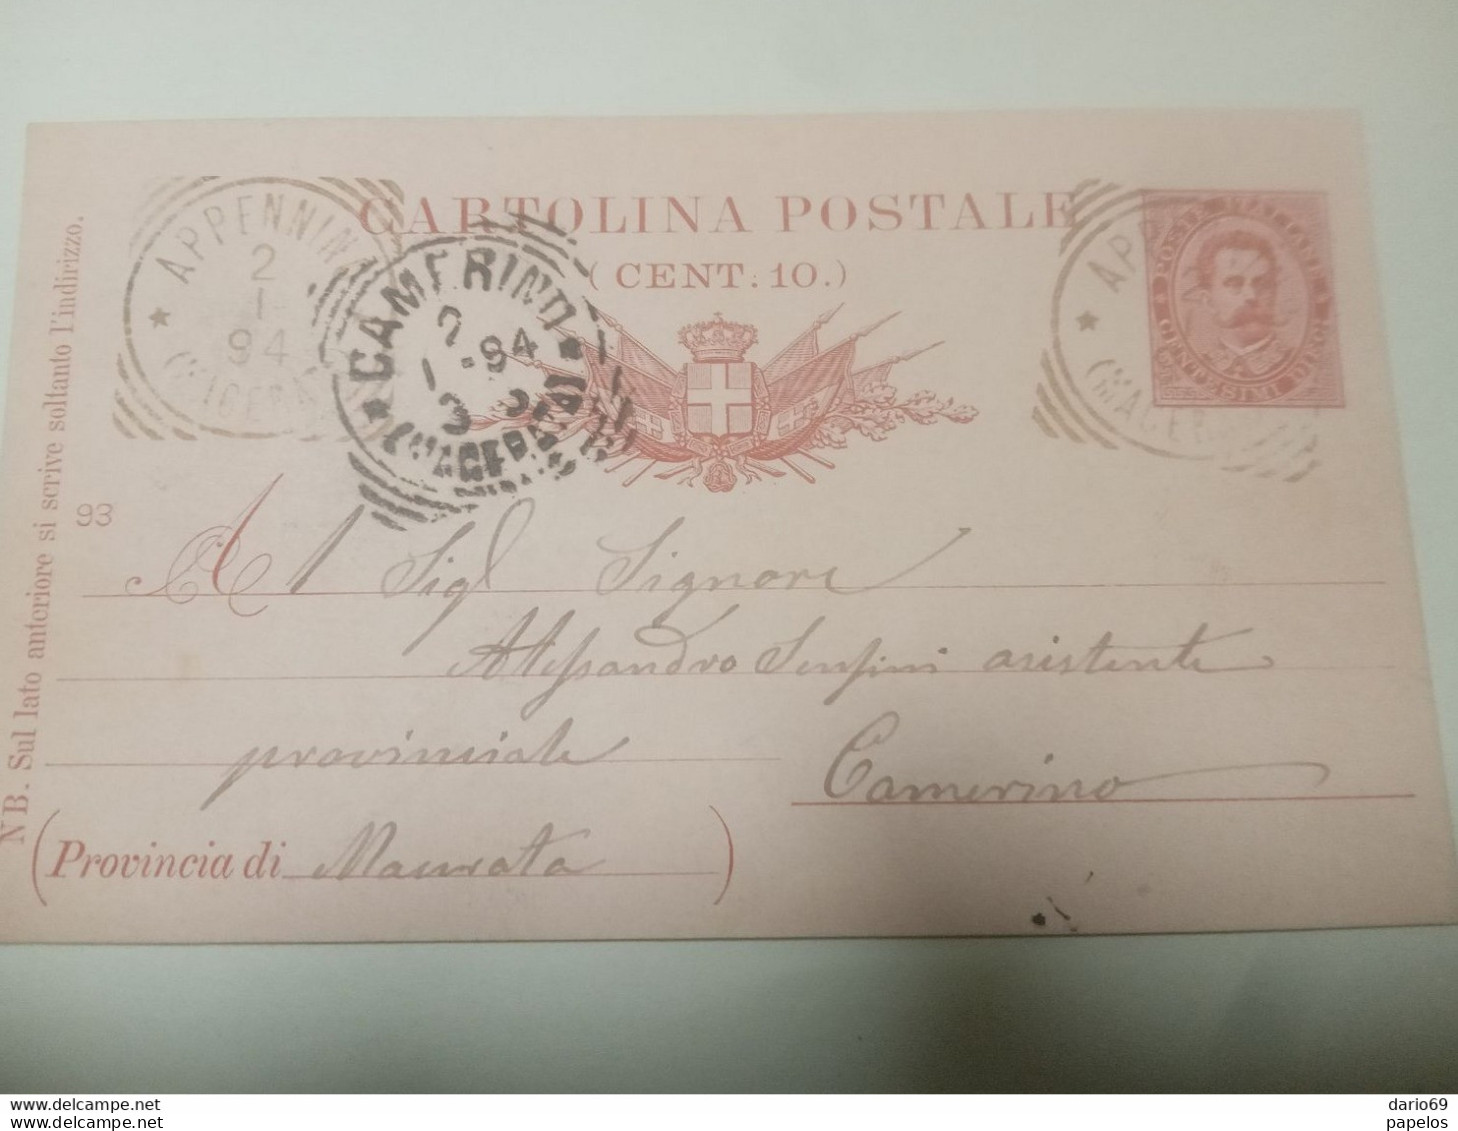 1894 CARTOLINA CON ANNULLO APPENNINO MACERATA - Stamped Stationery